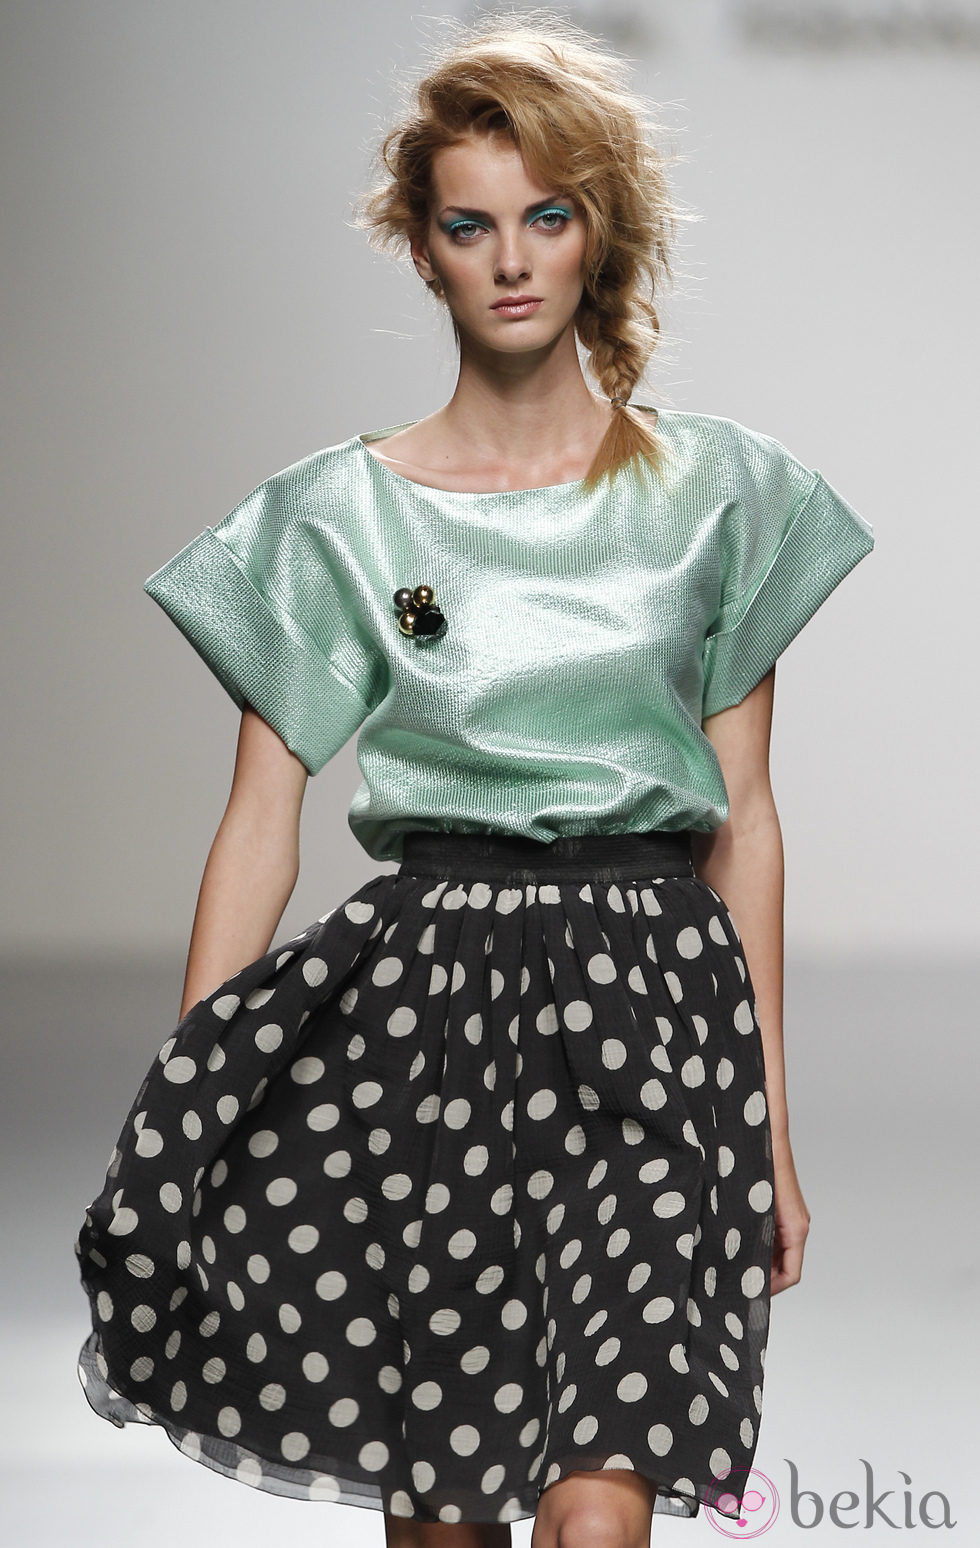 Falda de lunares de Kina Fernández en Cibeles, colección primavera de 2012